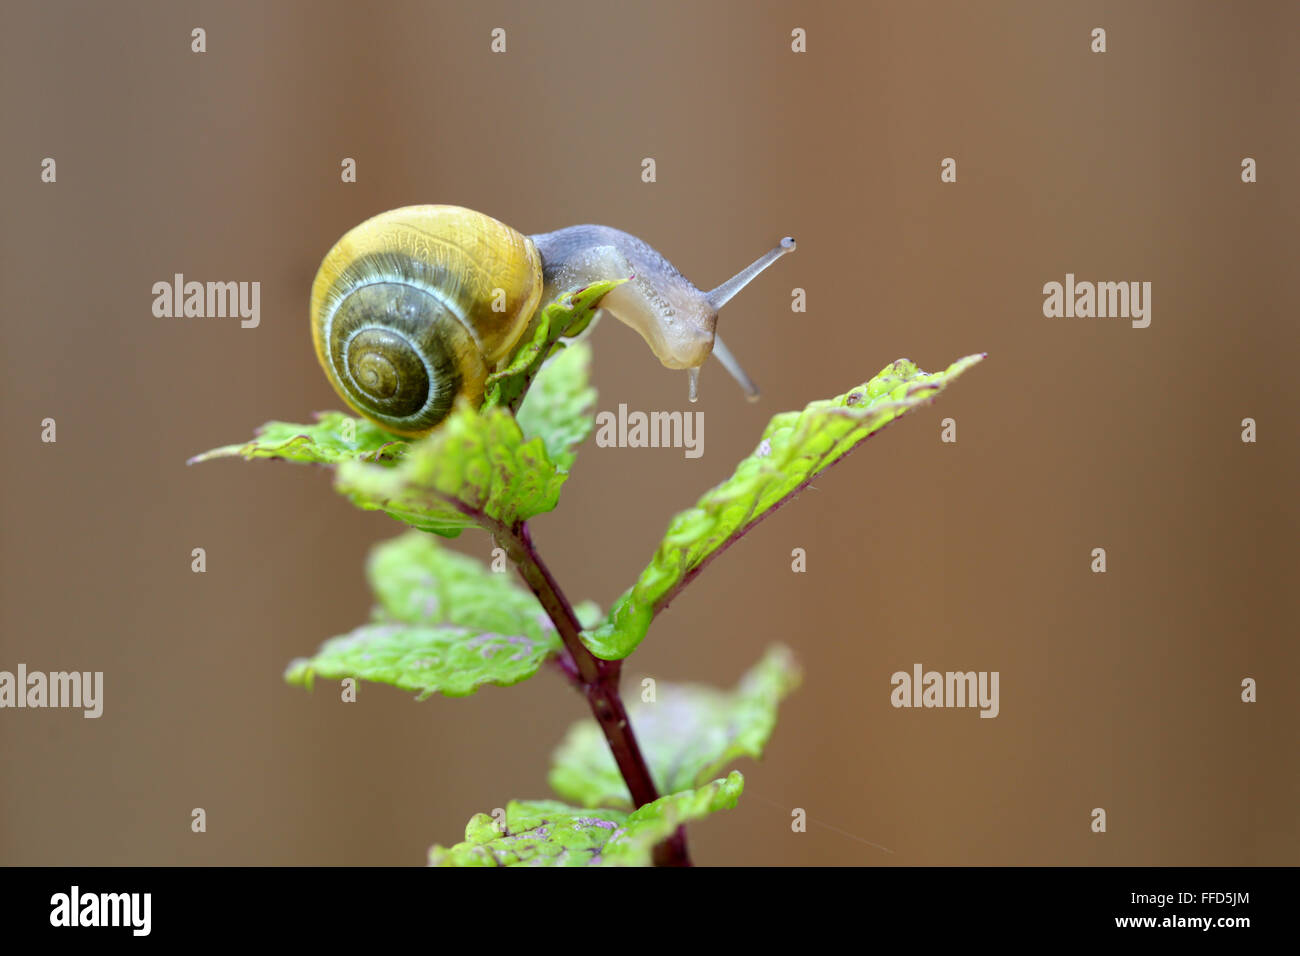 A small yellow banded garden snail climbing over a garden plant Stock Photo